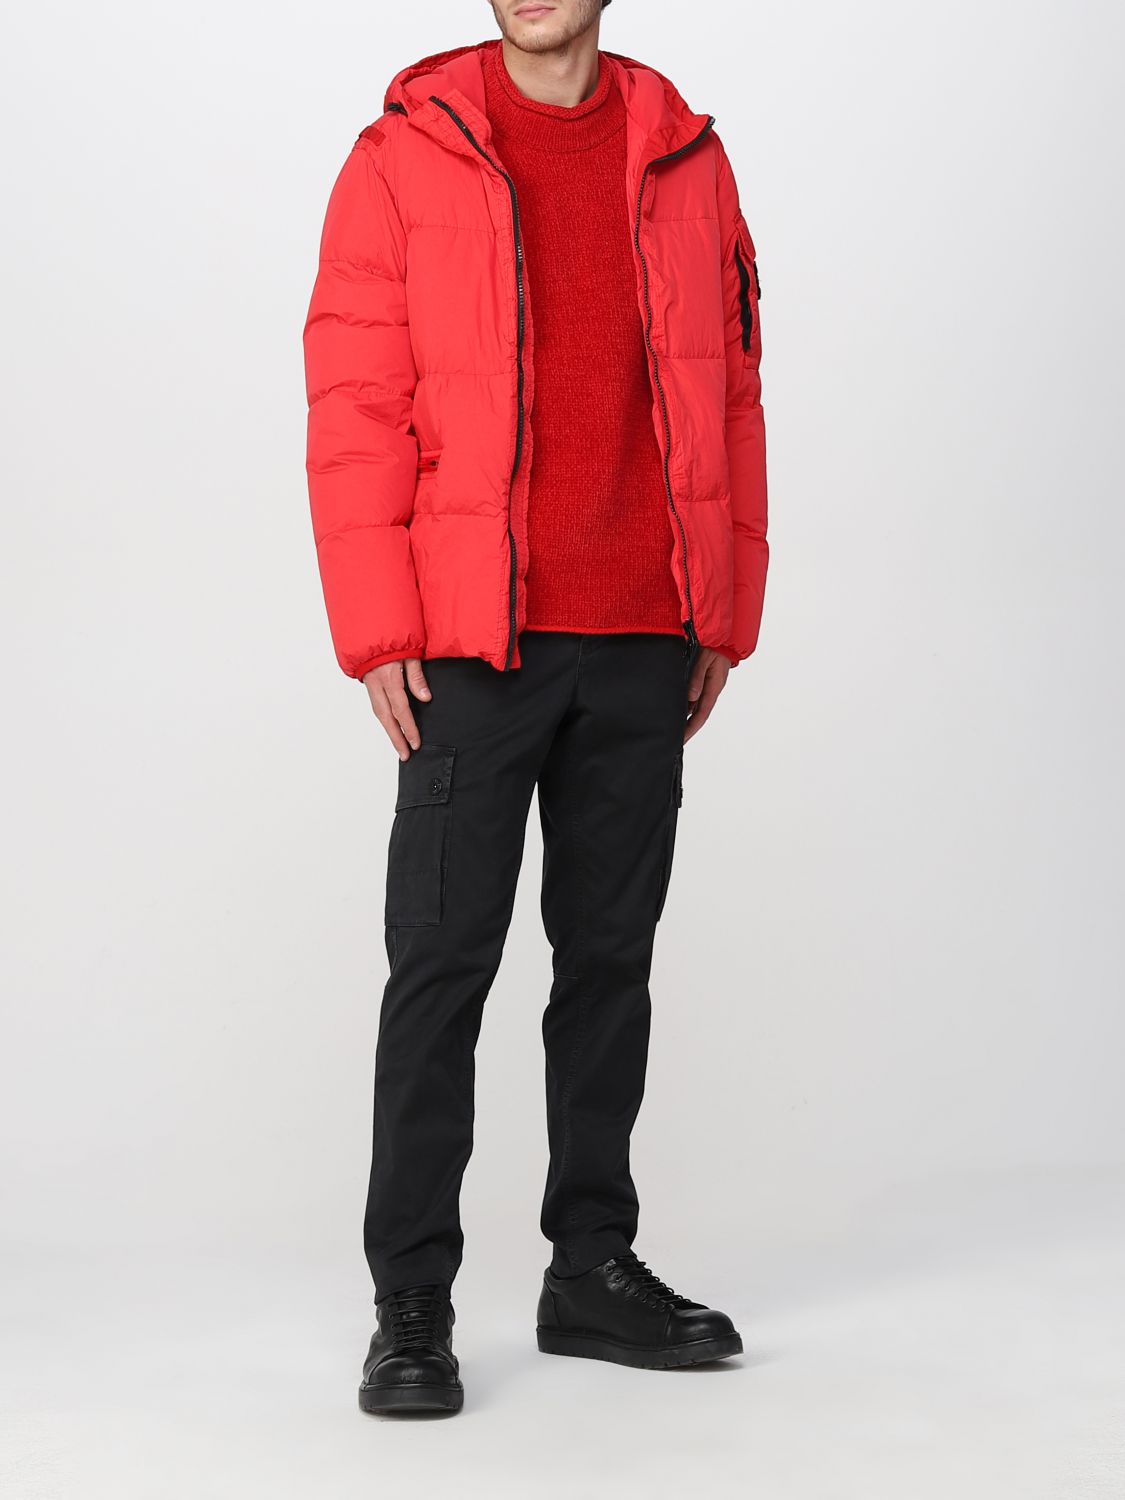 Jacket Stone Island: Stone Island jacket for men red 2